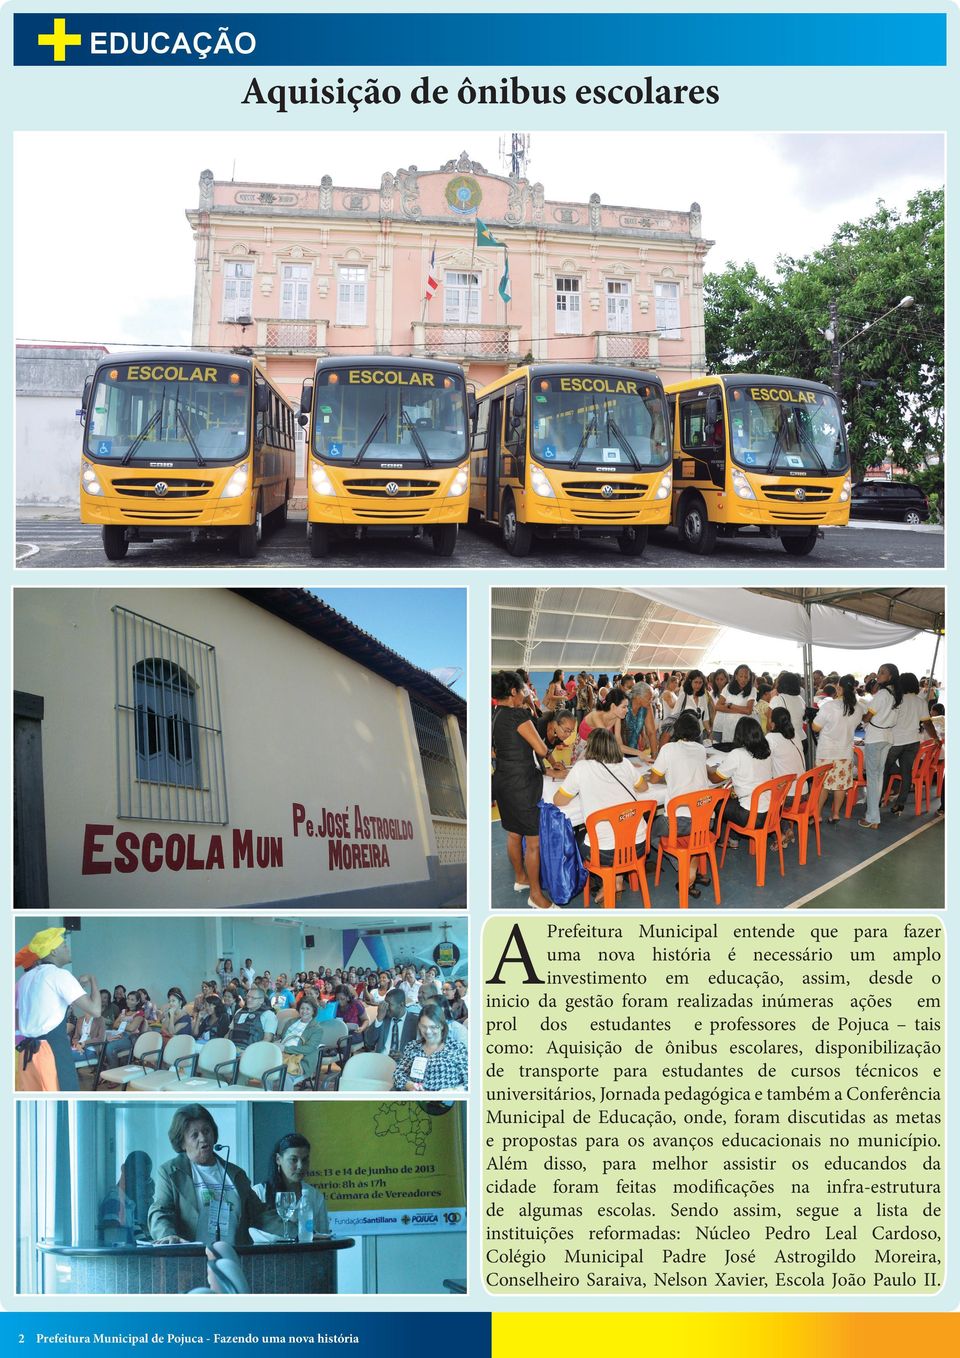 pedagógica e também a Conferência Municipal de Educação, onde, foram discutidas as metas e propostas para os avanços educacionais no município.